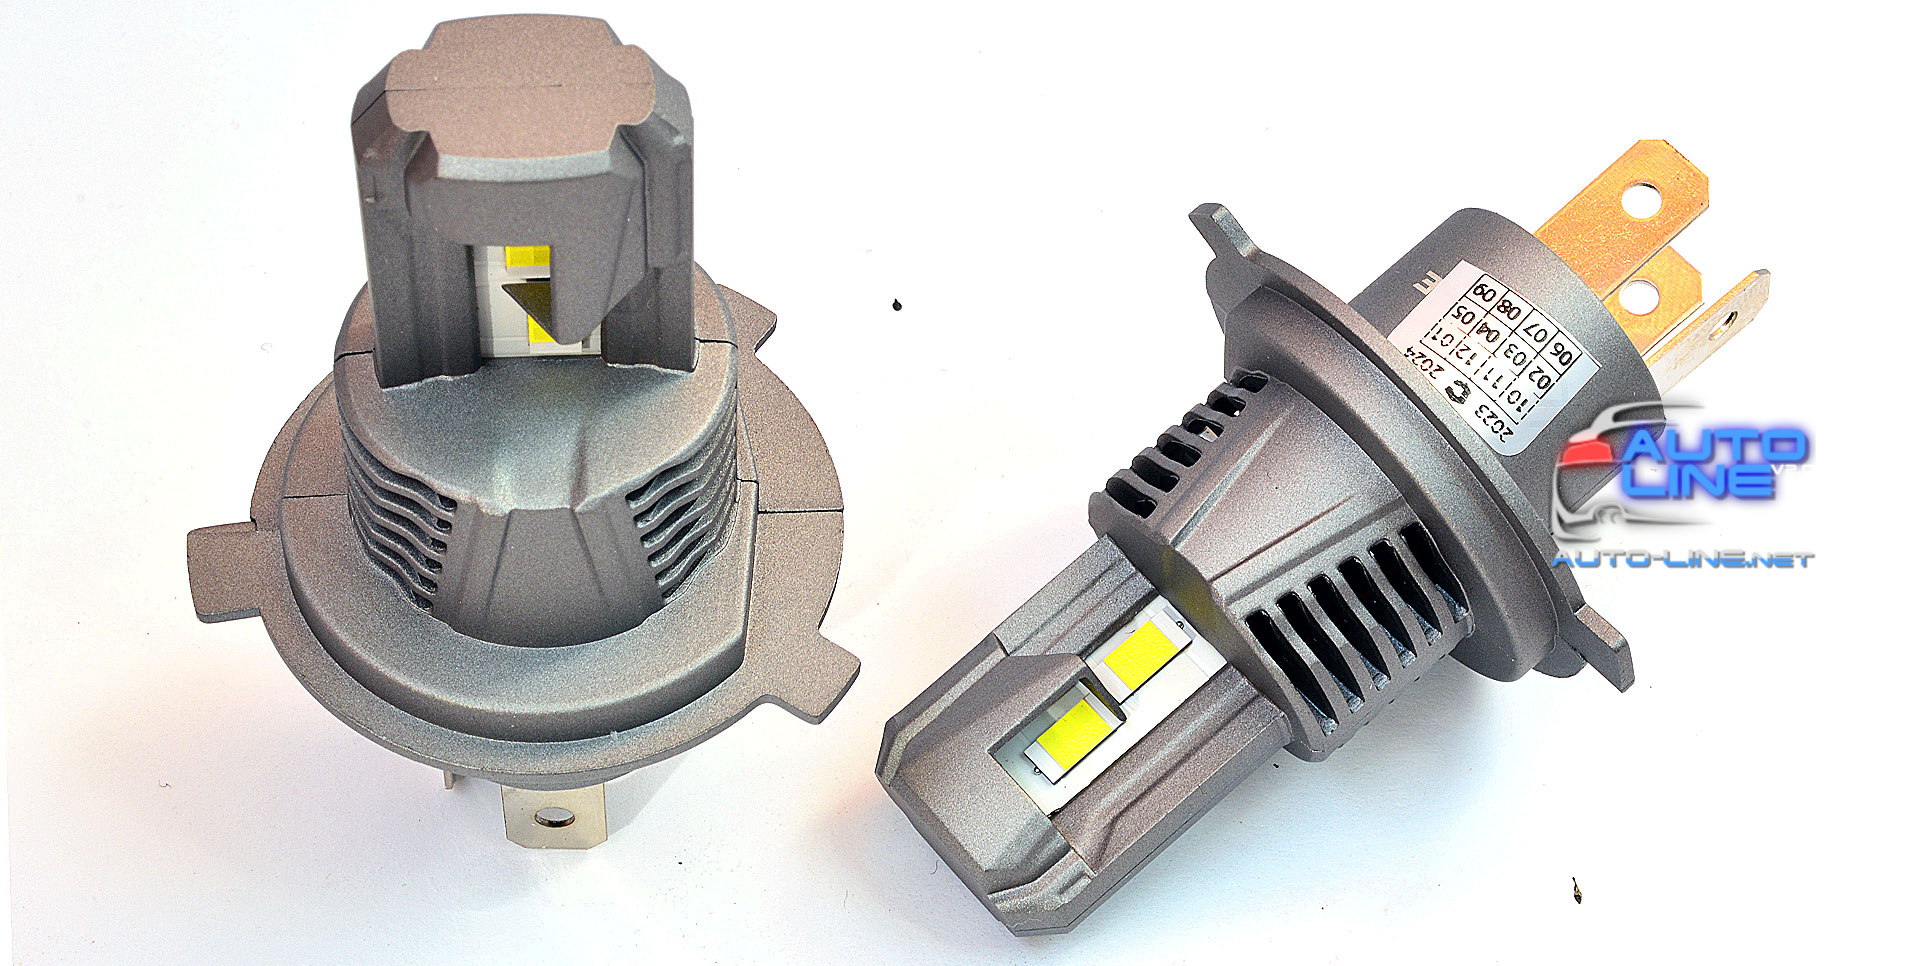 Cyclone LED H4 H/L 5500K type 43 — автомобильная LED-лампа H4 с бесшумным вентилятором